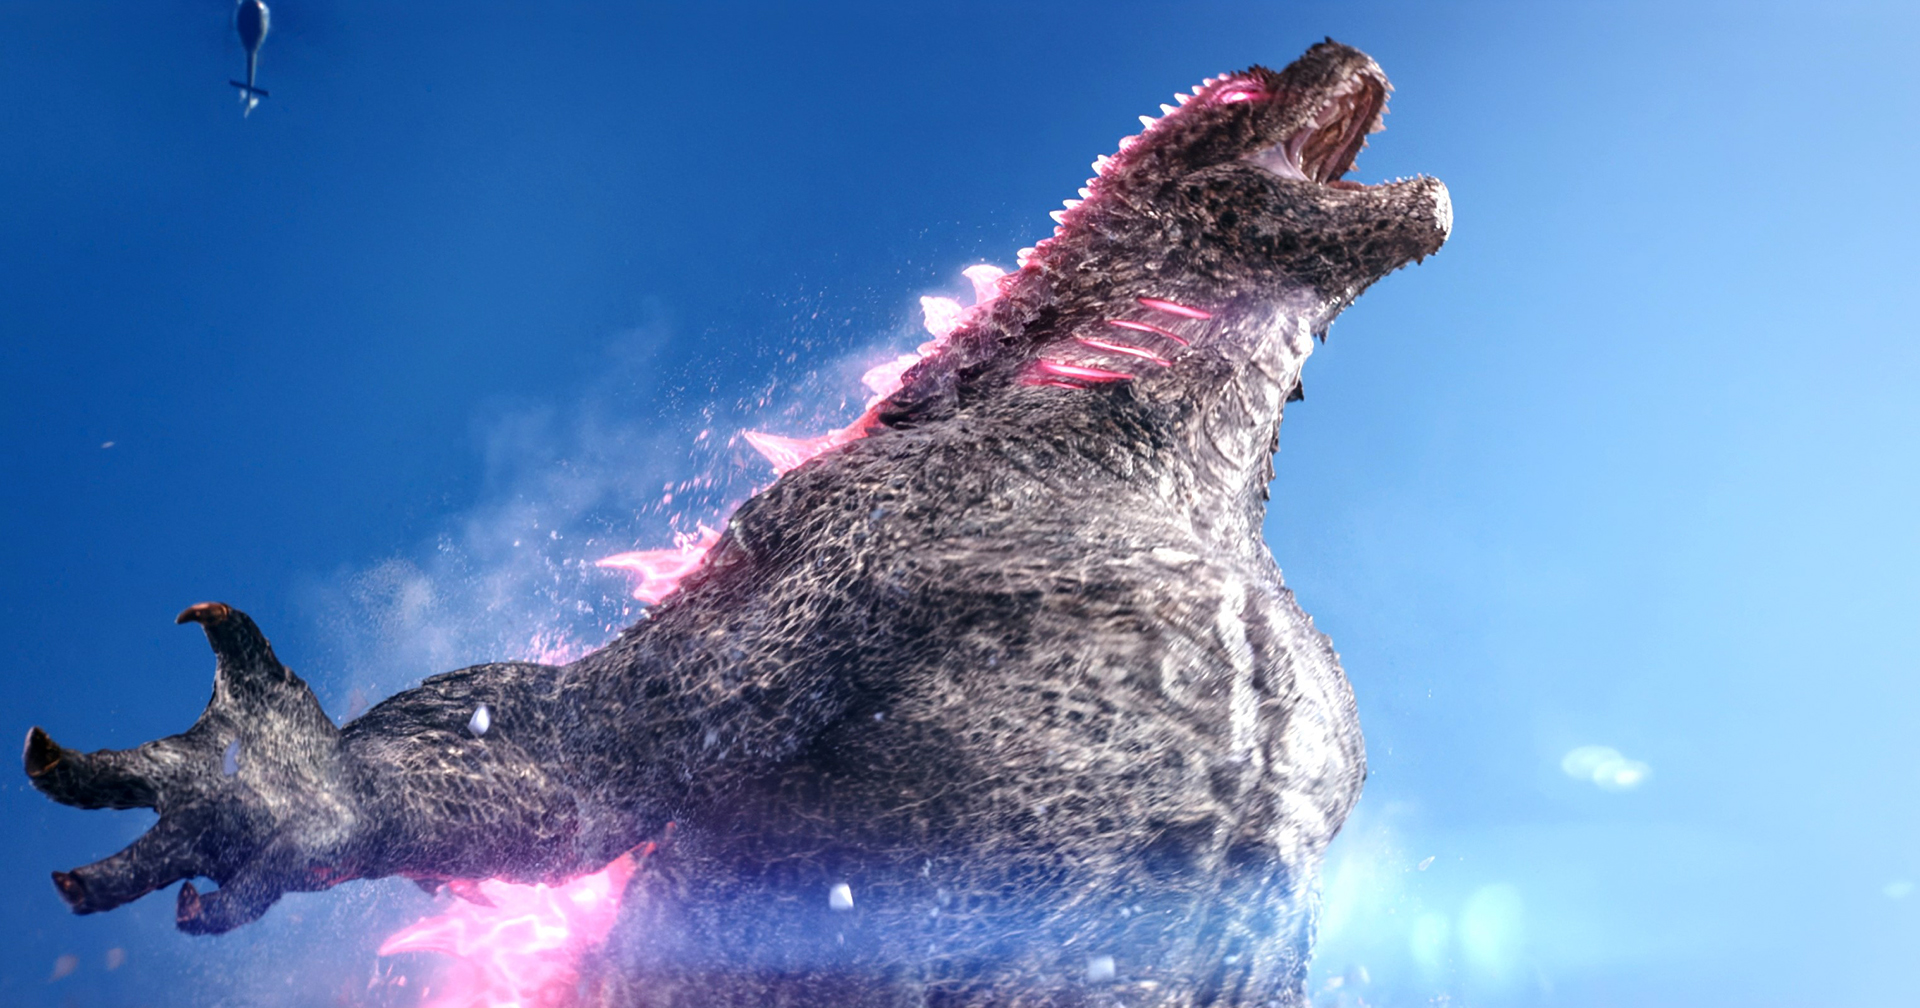 ผู้กำกับ ‘Godzilla x Kong: The New Empire’ เผย อยากเพิ่มอารมณ์เชิงลึกให้ Godzilla มากขึ้น ในภาคถัดไป